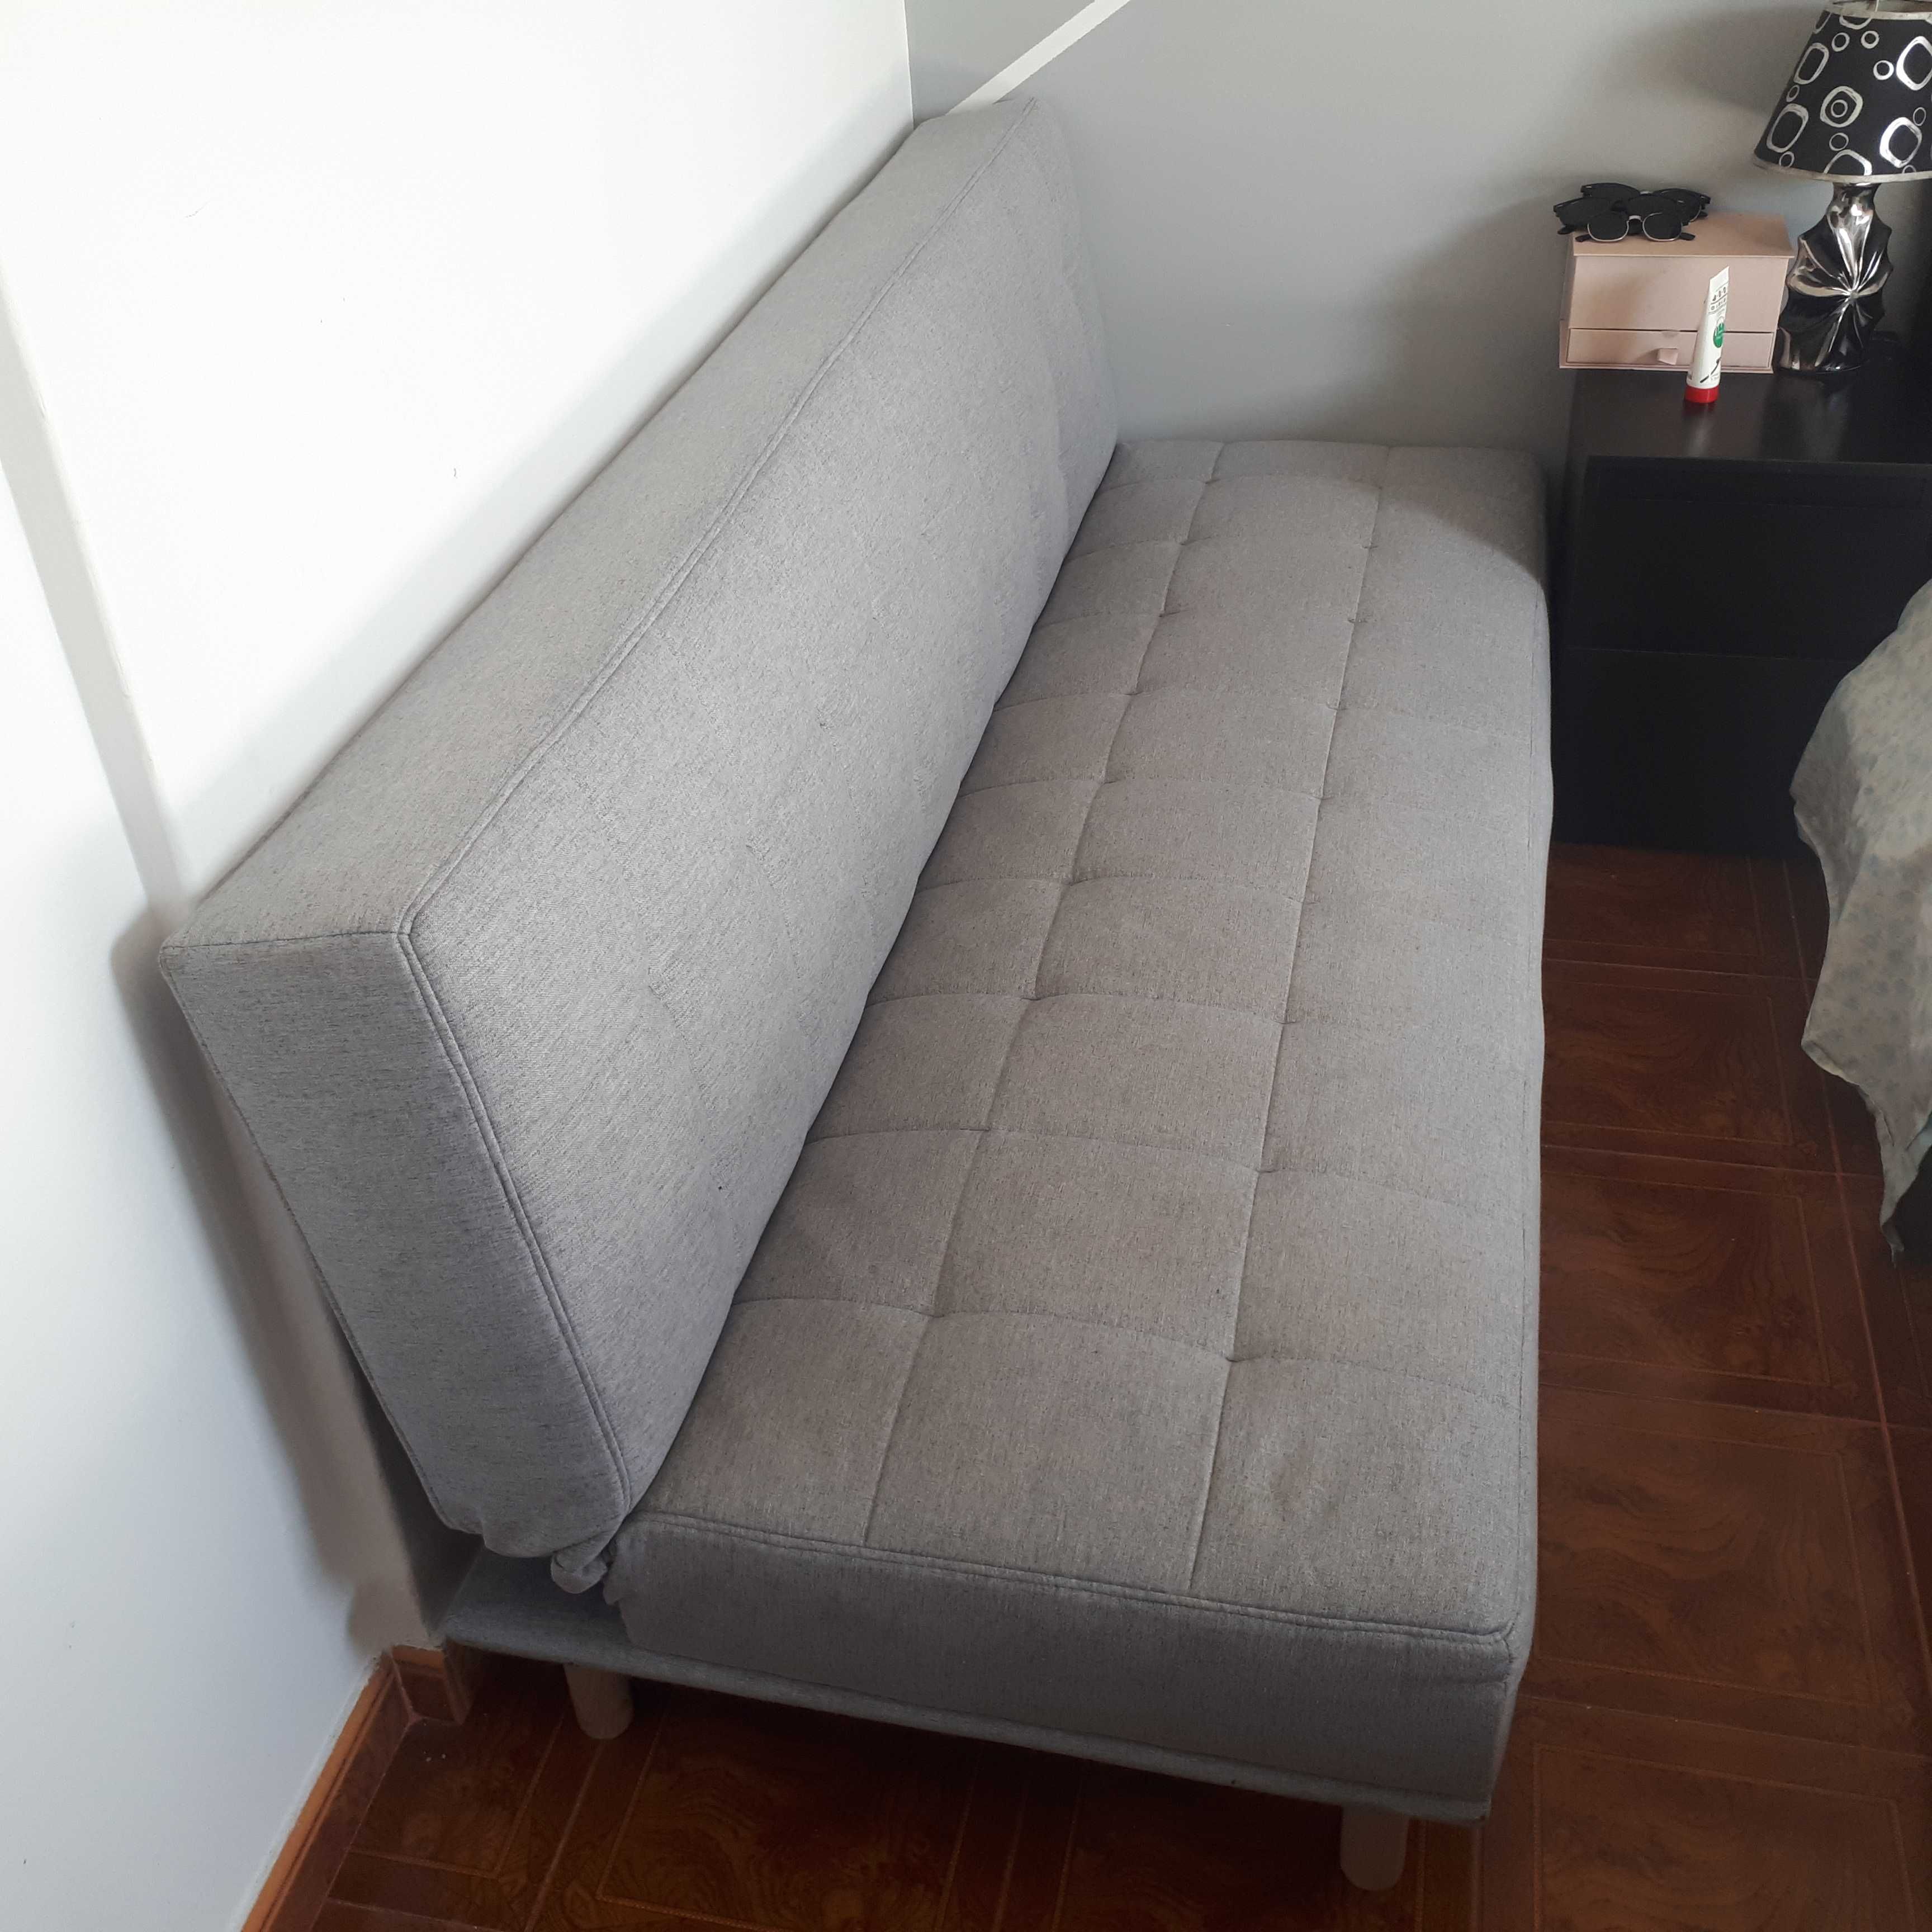 Vendo sofa cama conforama